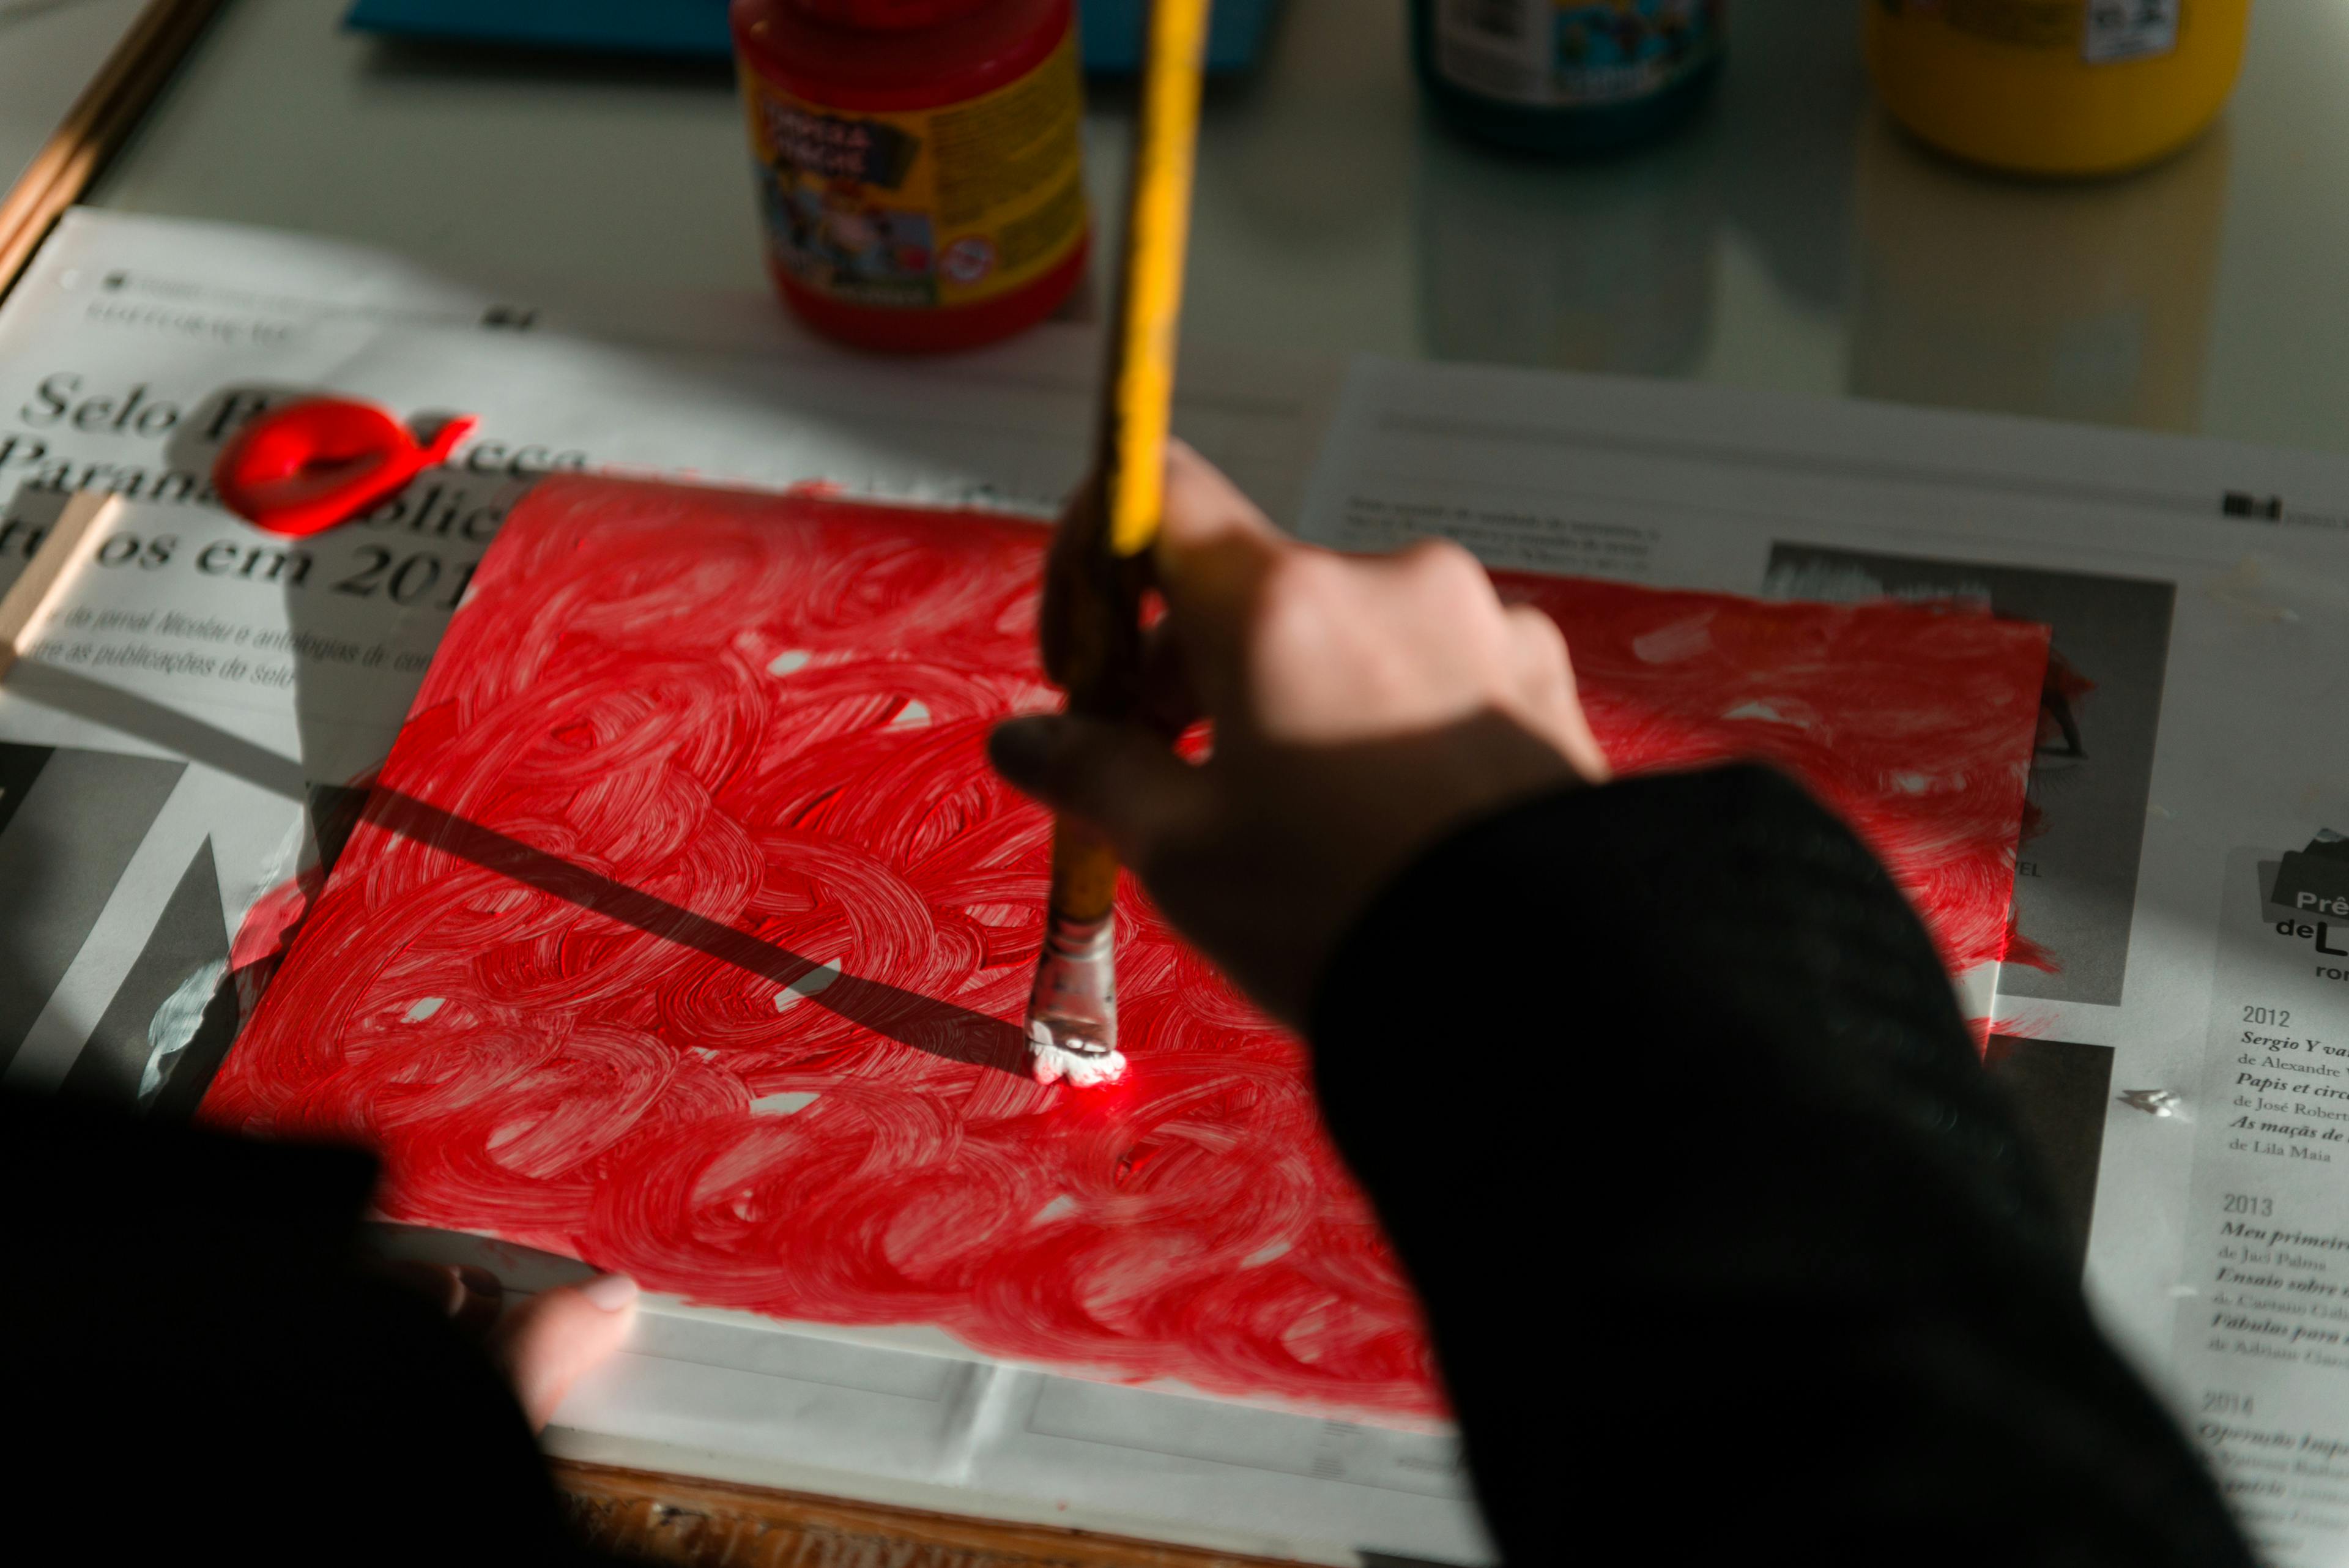 Mão pintando de vermelho uma folha de papel